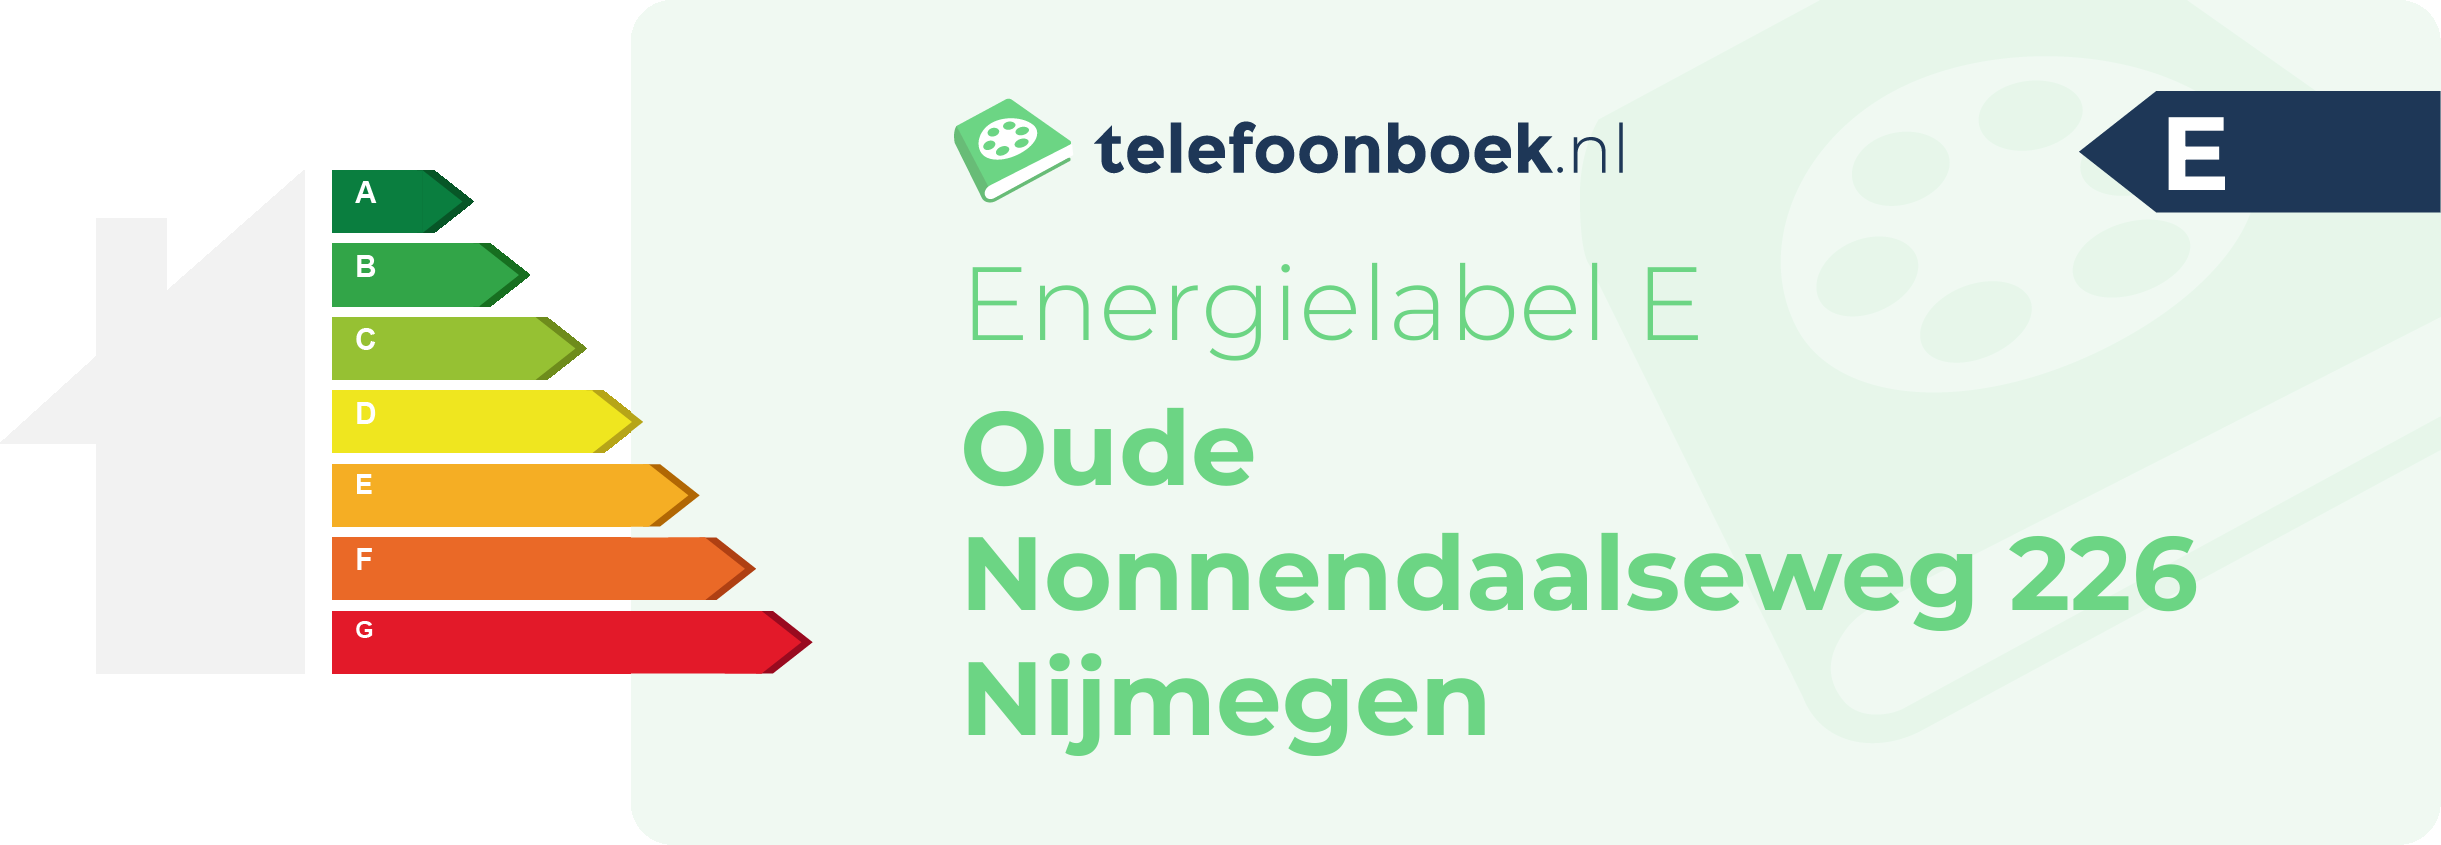 Energielabel Oude Nonnendaalseweg 226 Nijmegen